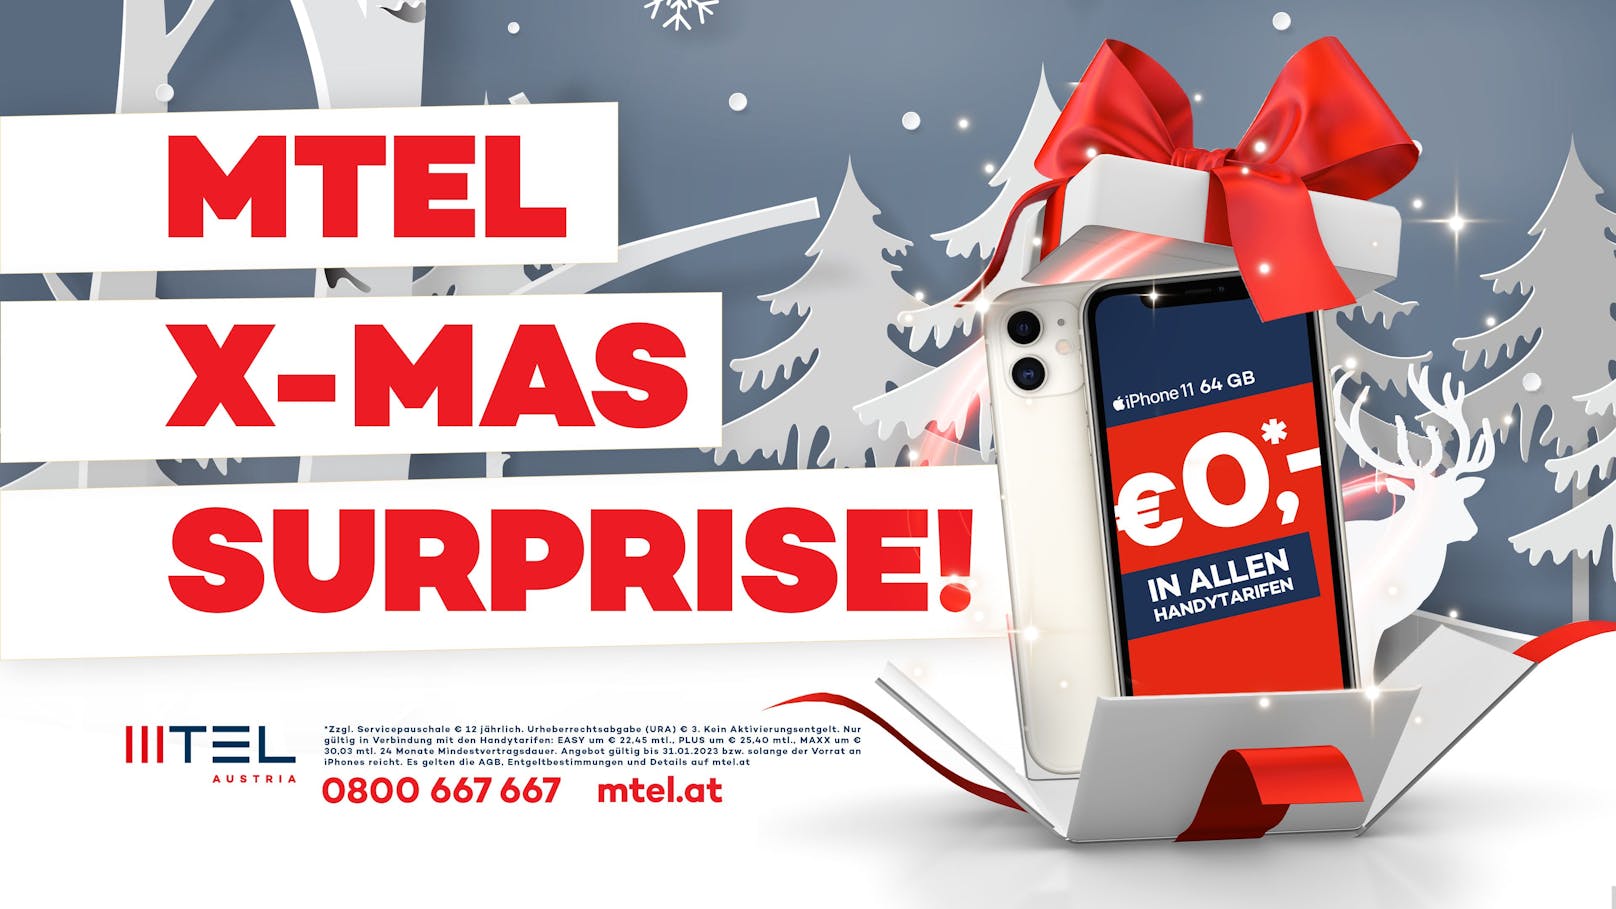 Wer noch auf der Suche nach einem passenden Weihnachtsgeschenk, wird bei MTEL fündig: Das iPhone 11 ist um € 0,- zu haben!